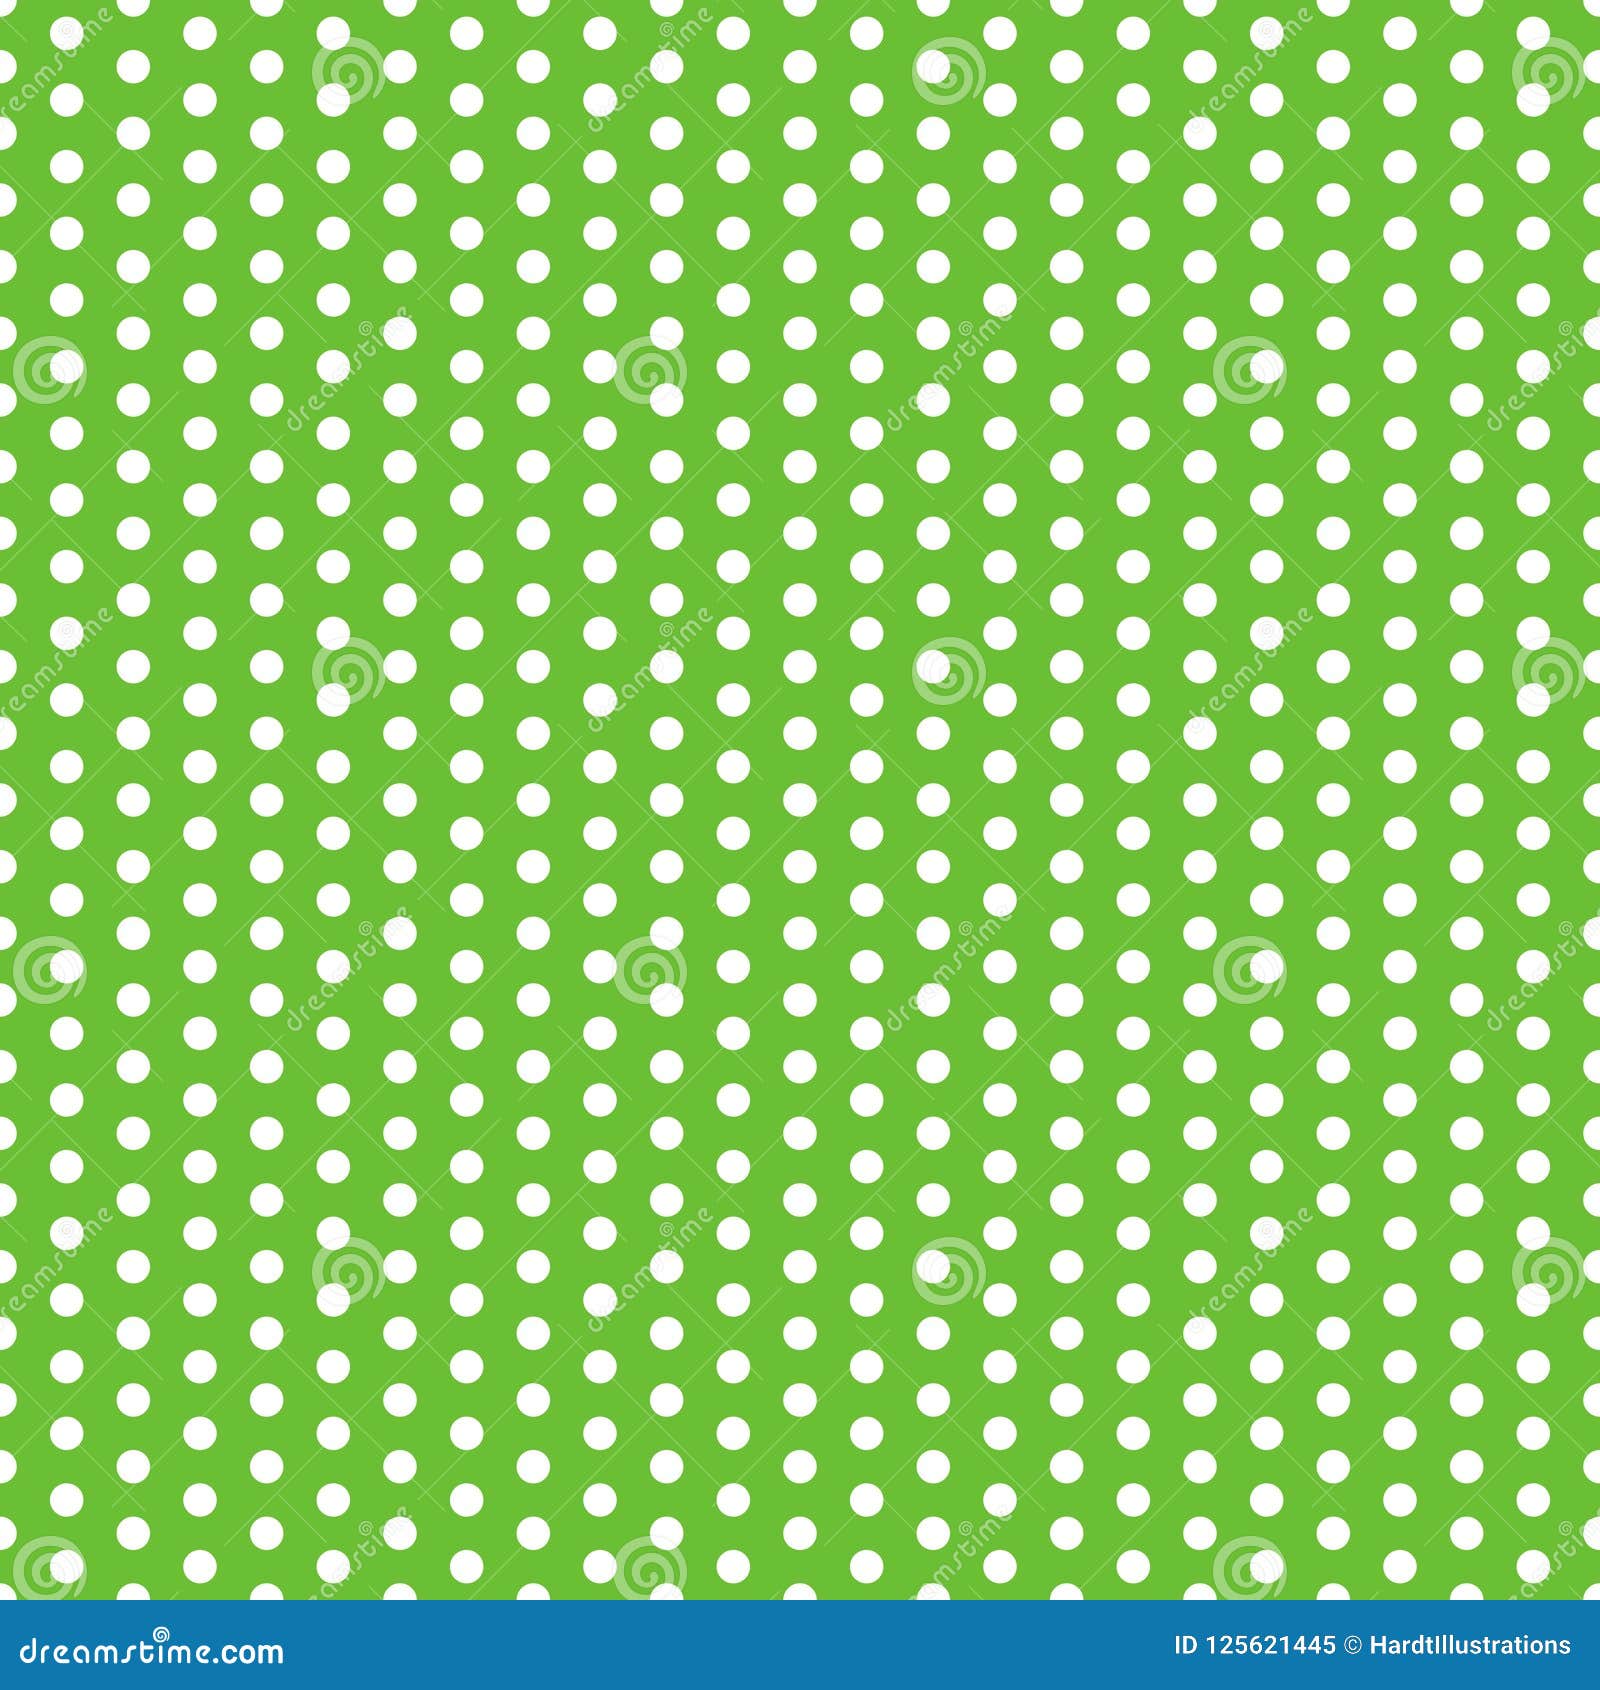 Polka Dots Seamless Pattern Stock Vector - Illustration of circle ...